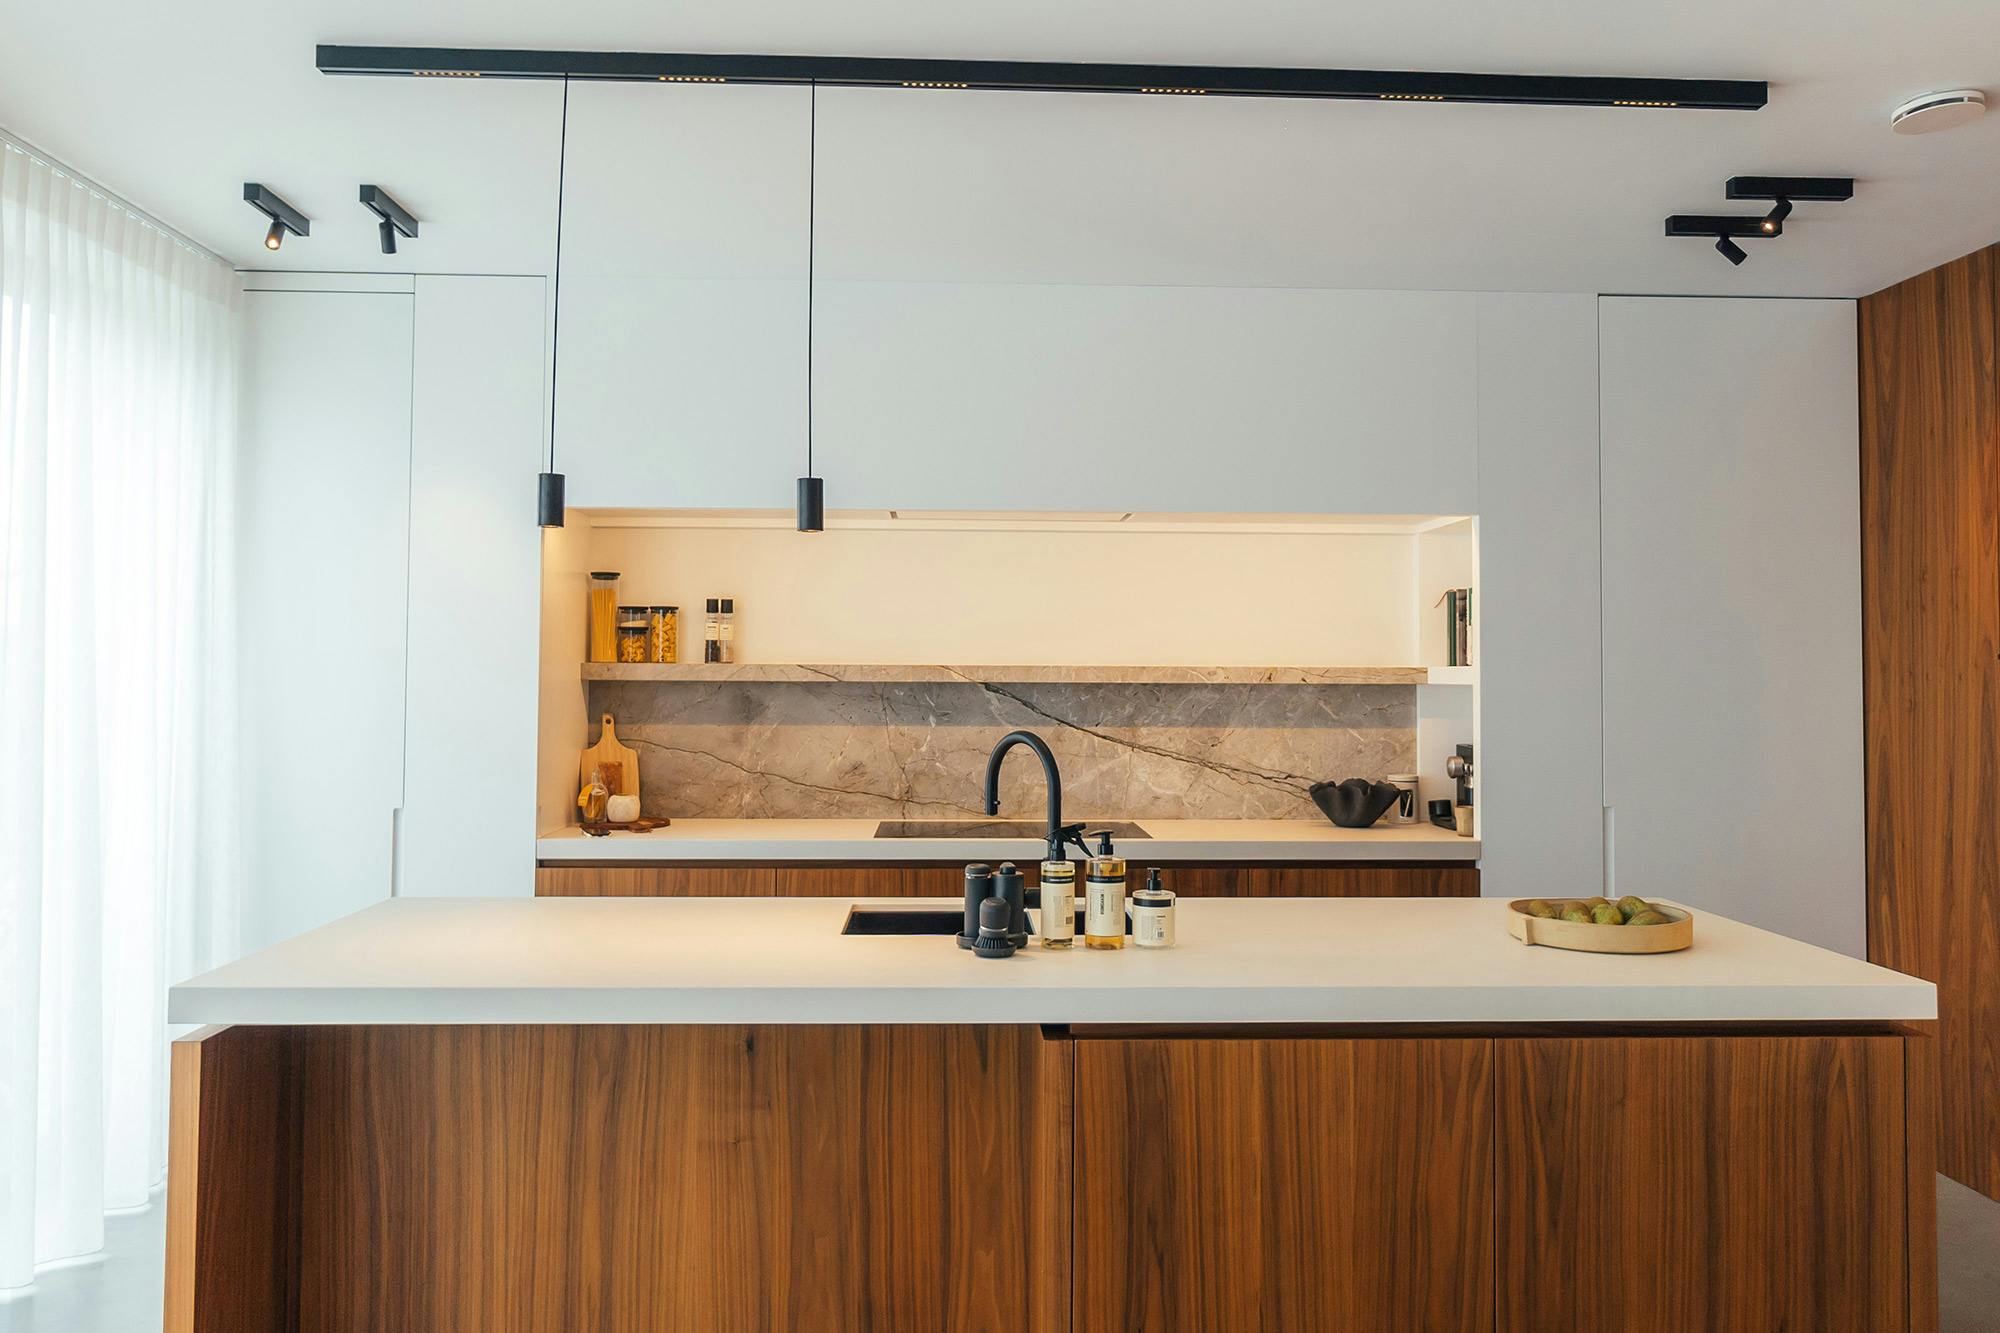 Numéro d'image 35 de la section actuelle de DKTN Arga creates an elegant atmosphere in this open plan kitchen with a minimalist approach de Cosentino France